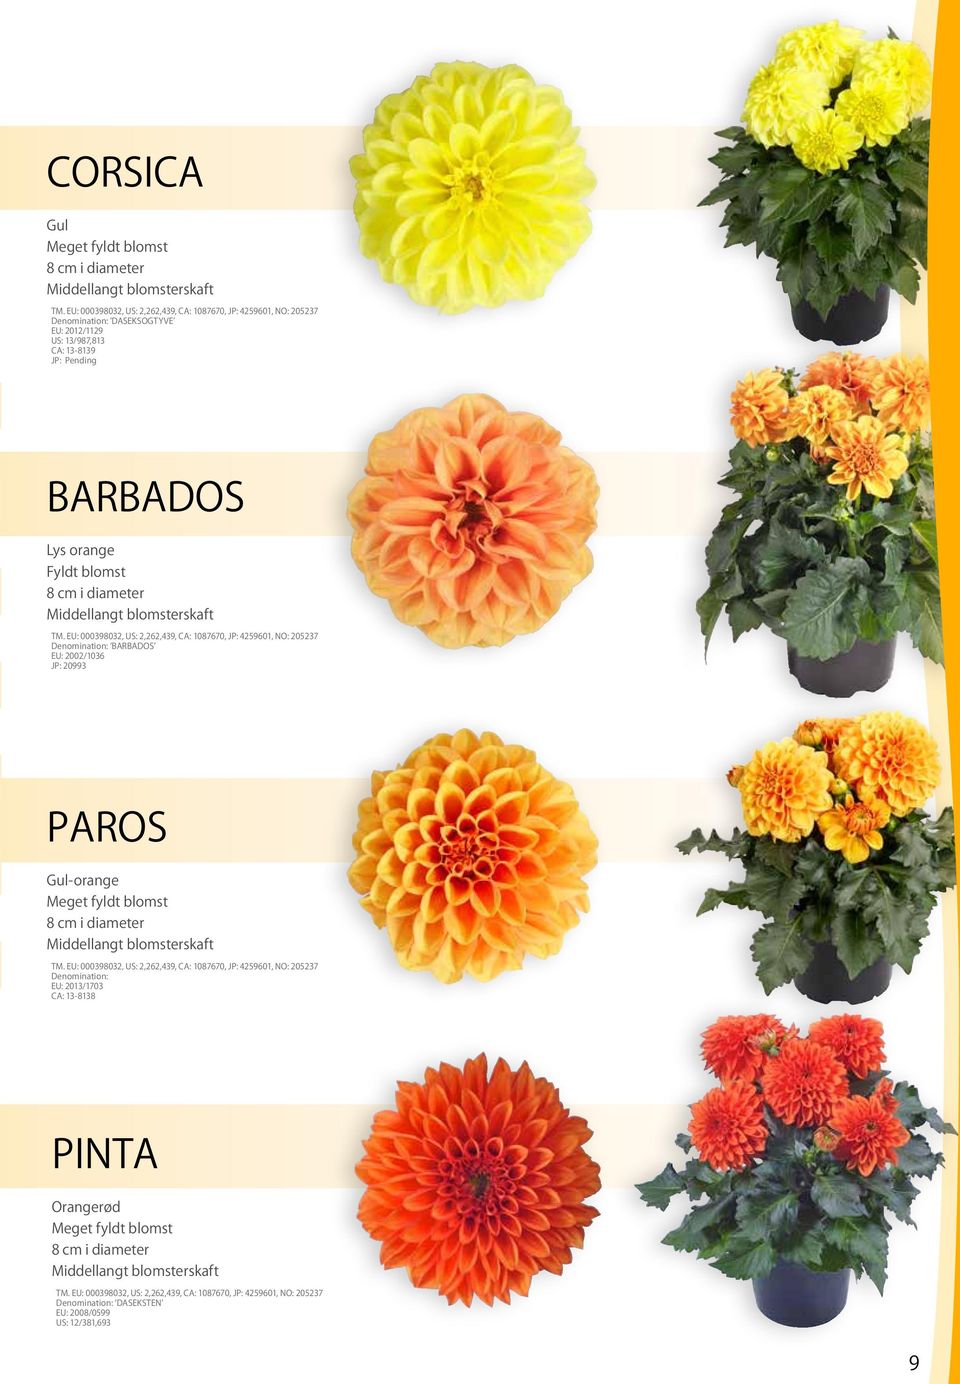 2002/1036 JP: 20993 PAROS Gul-orange Meget fyldt blomst 8 cm i diameter Middellangt blomsterskaft Denomination: EU: 2013/1703 CA: